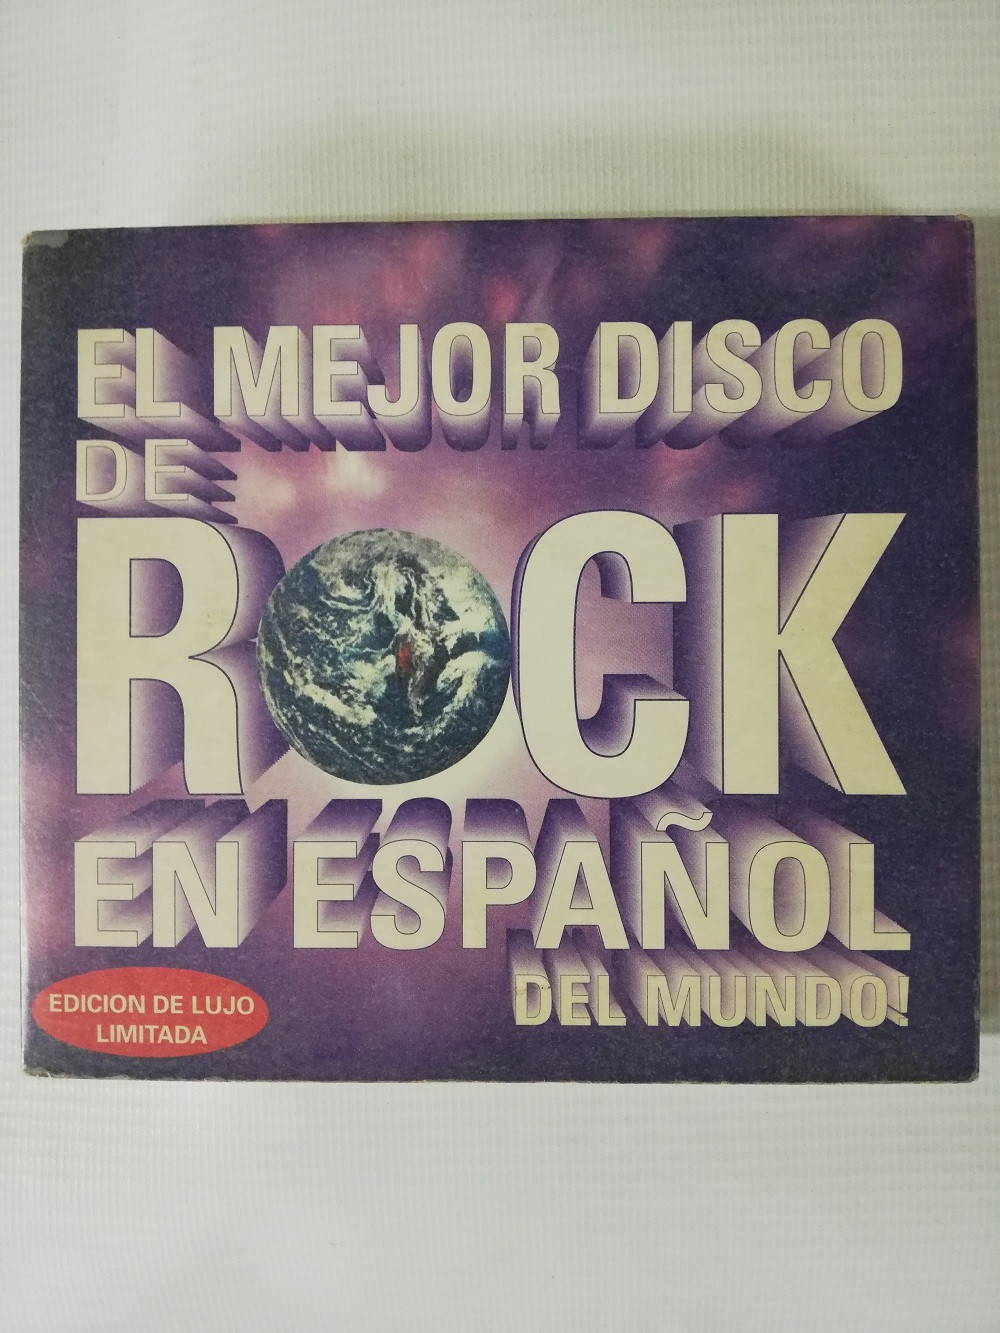 Imagen CD X 2 EL MEJOR DISCO DE ROCK EN ESPAÑOL DEL MUNDO - EDICIÓN DE LUJO LIMITADA